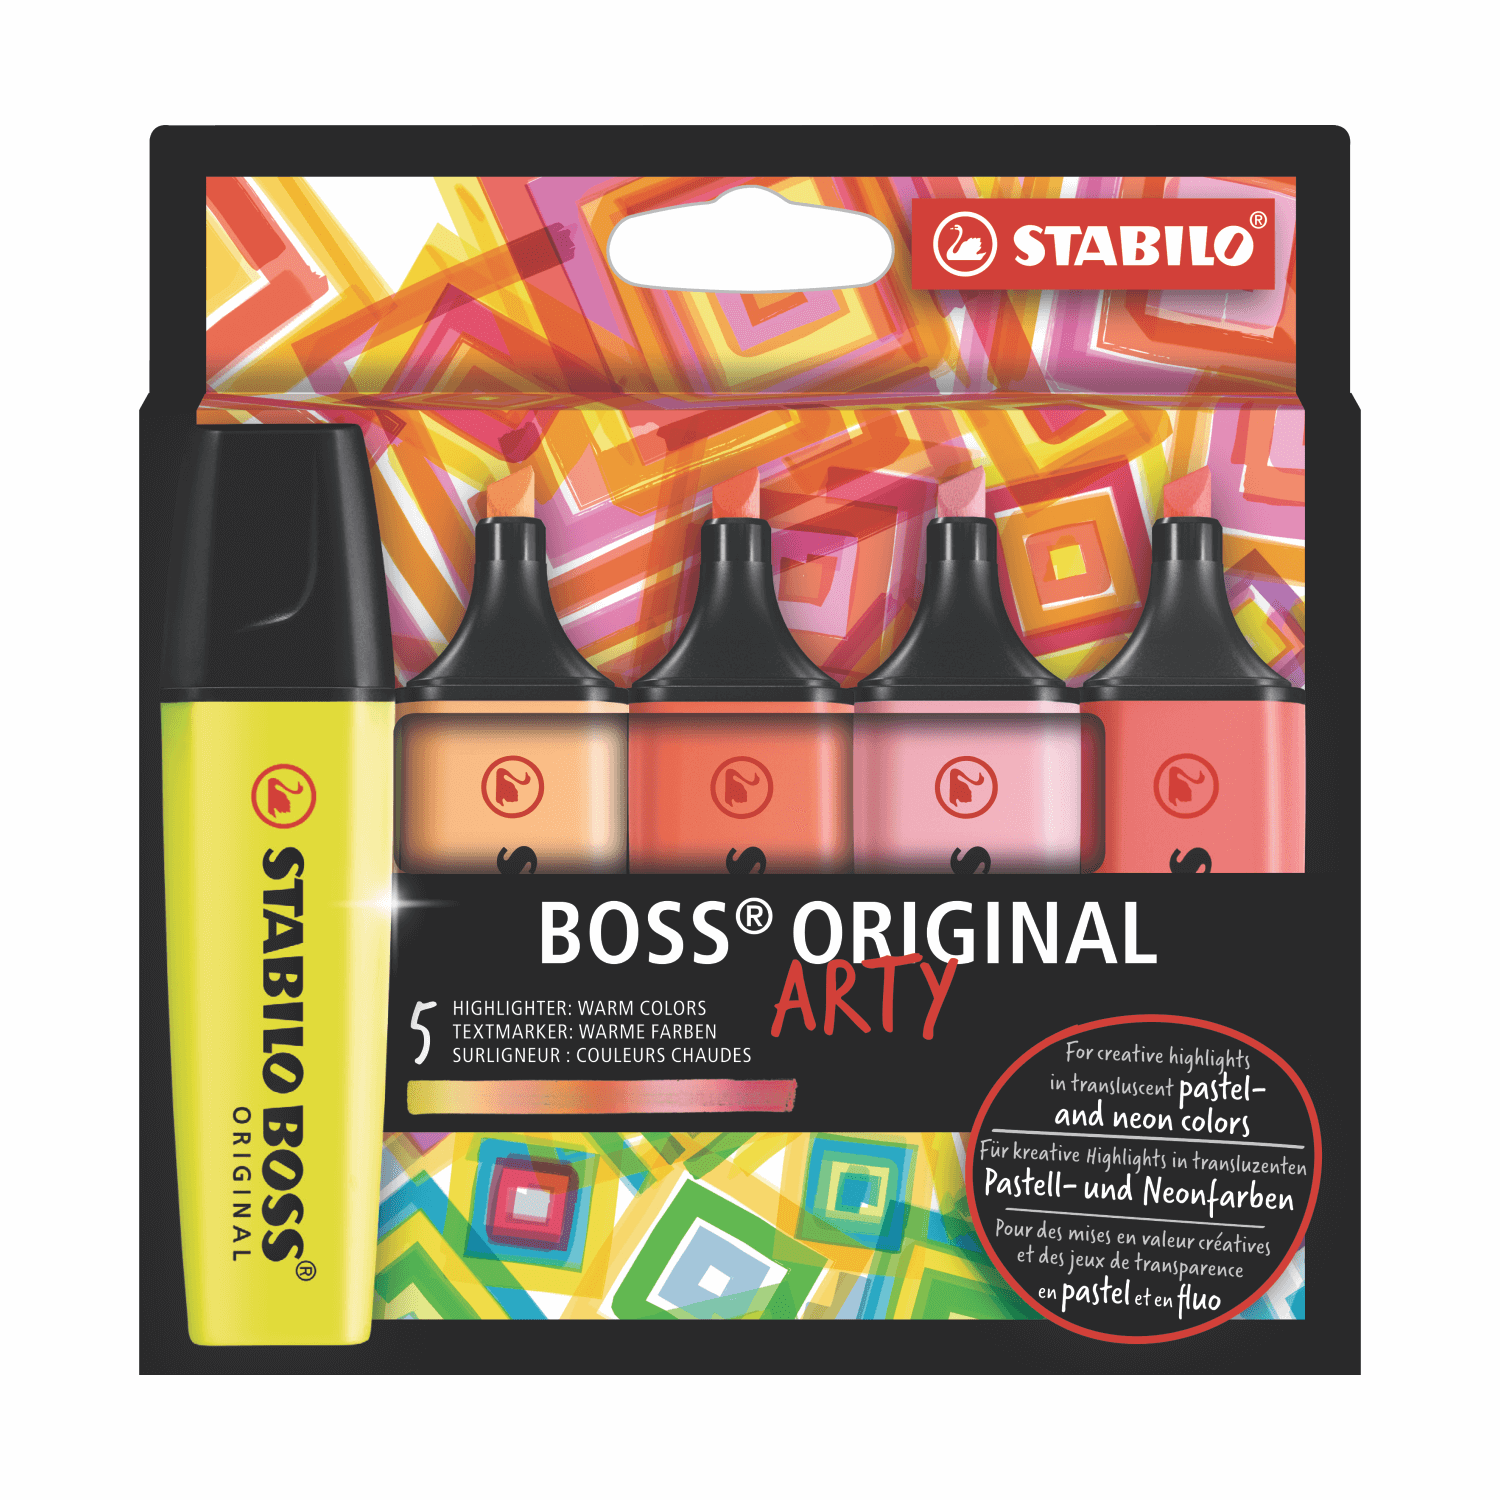 STABILO BOSS Original - Juego de marcadores en 4 colores pastel